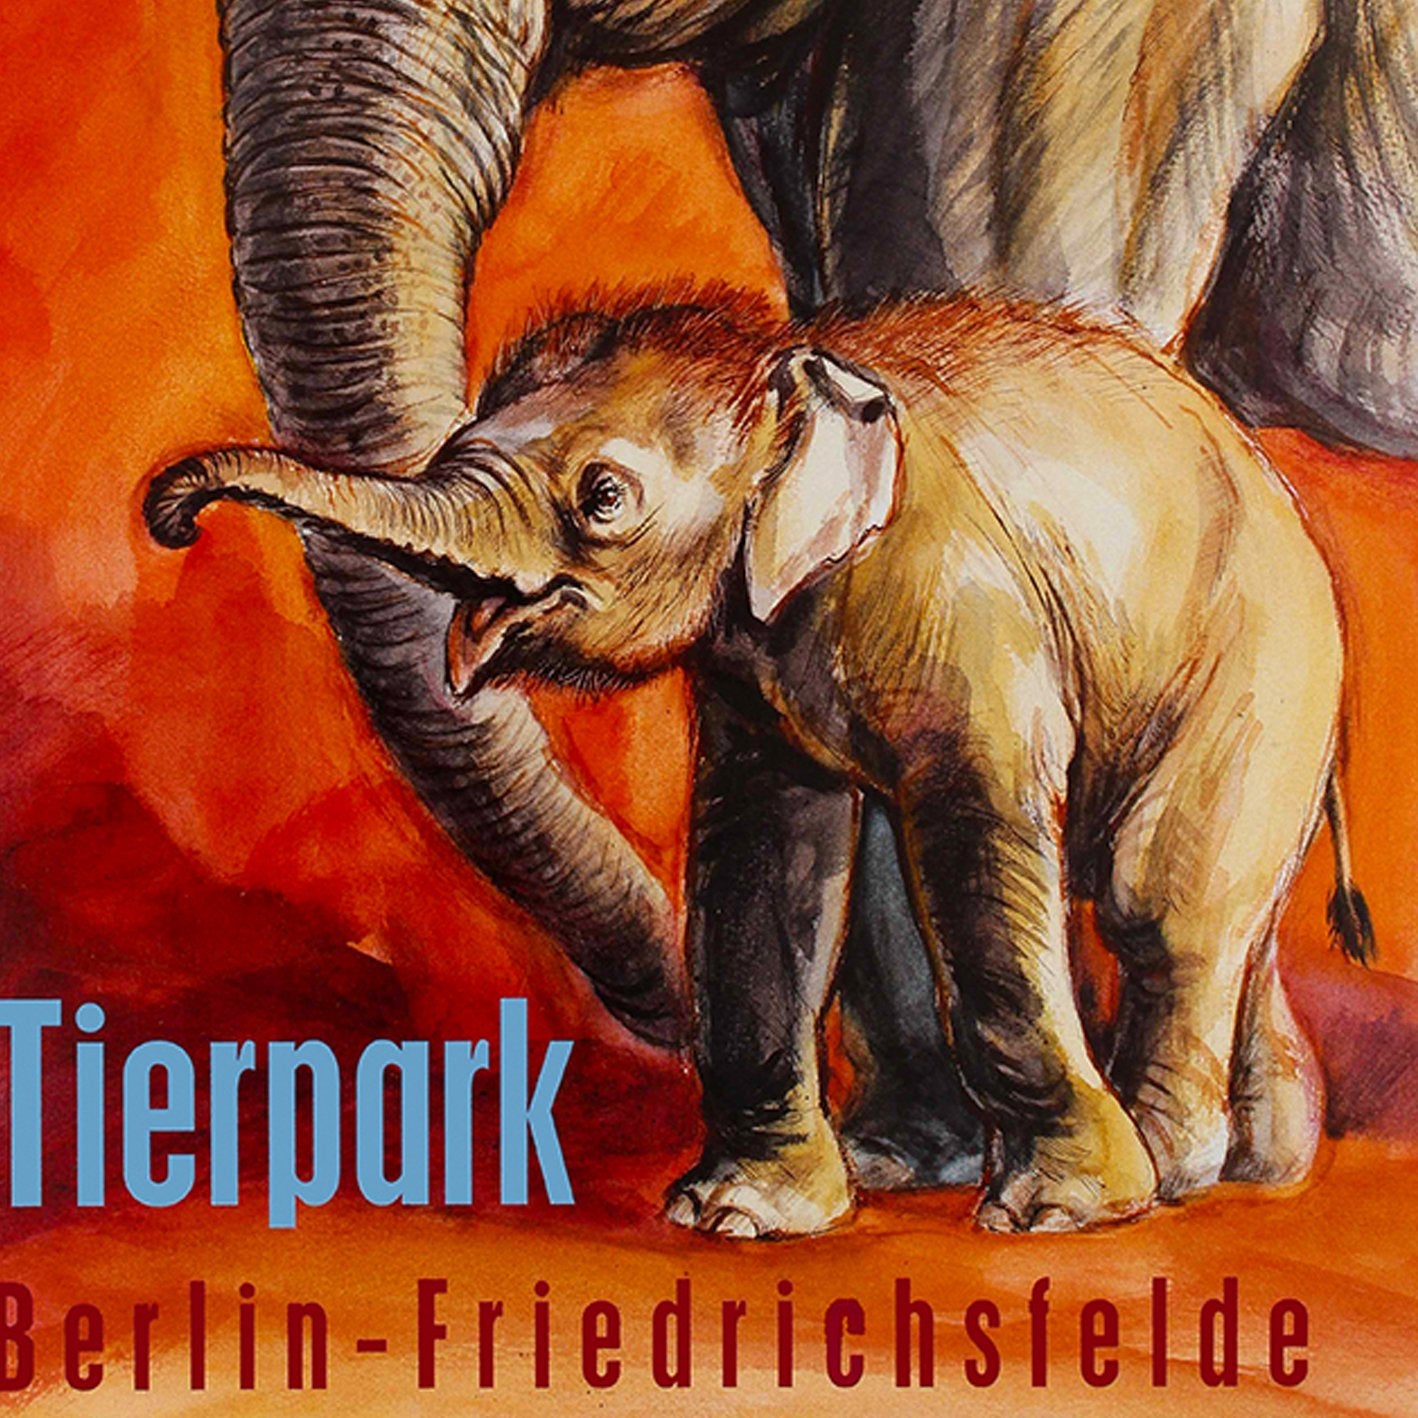 Zoo Tierpark Berlin Elephant